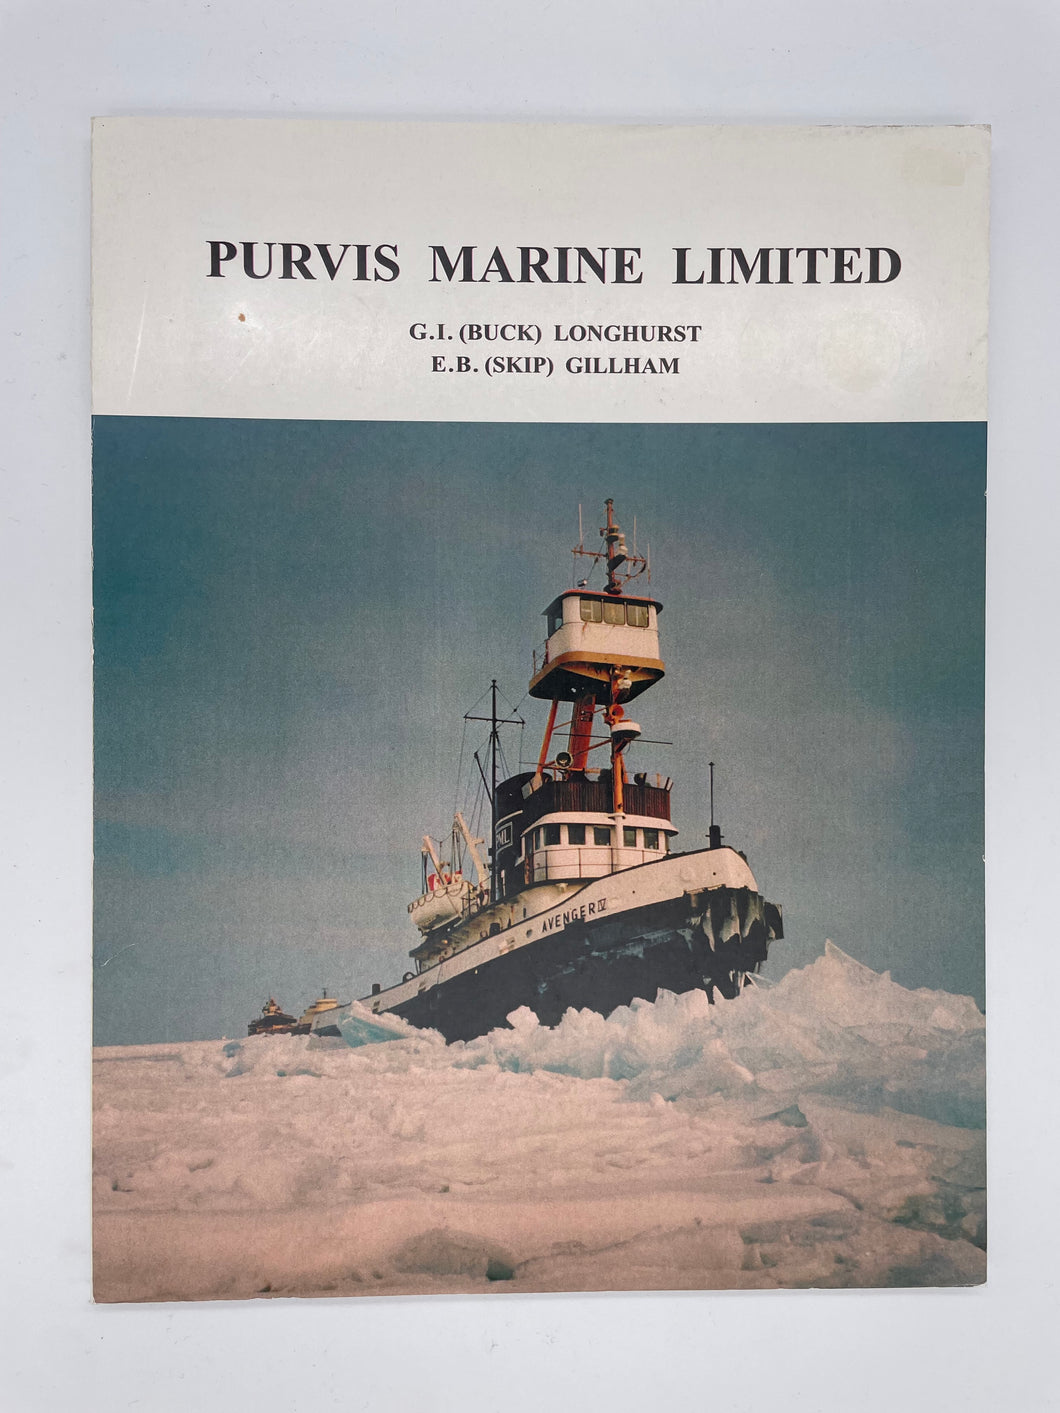 Purvis Marine Limited